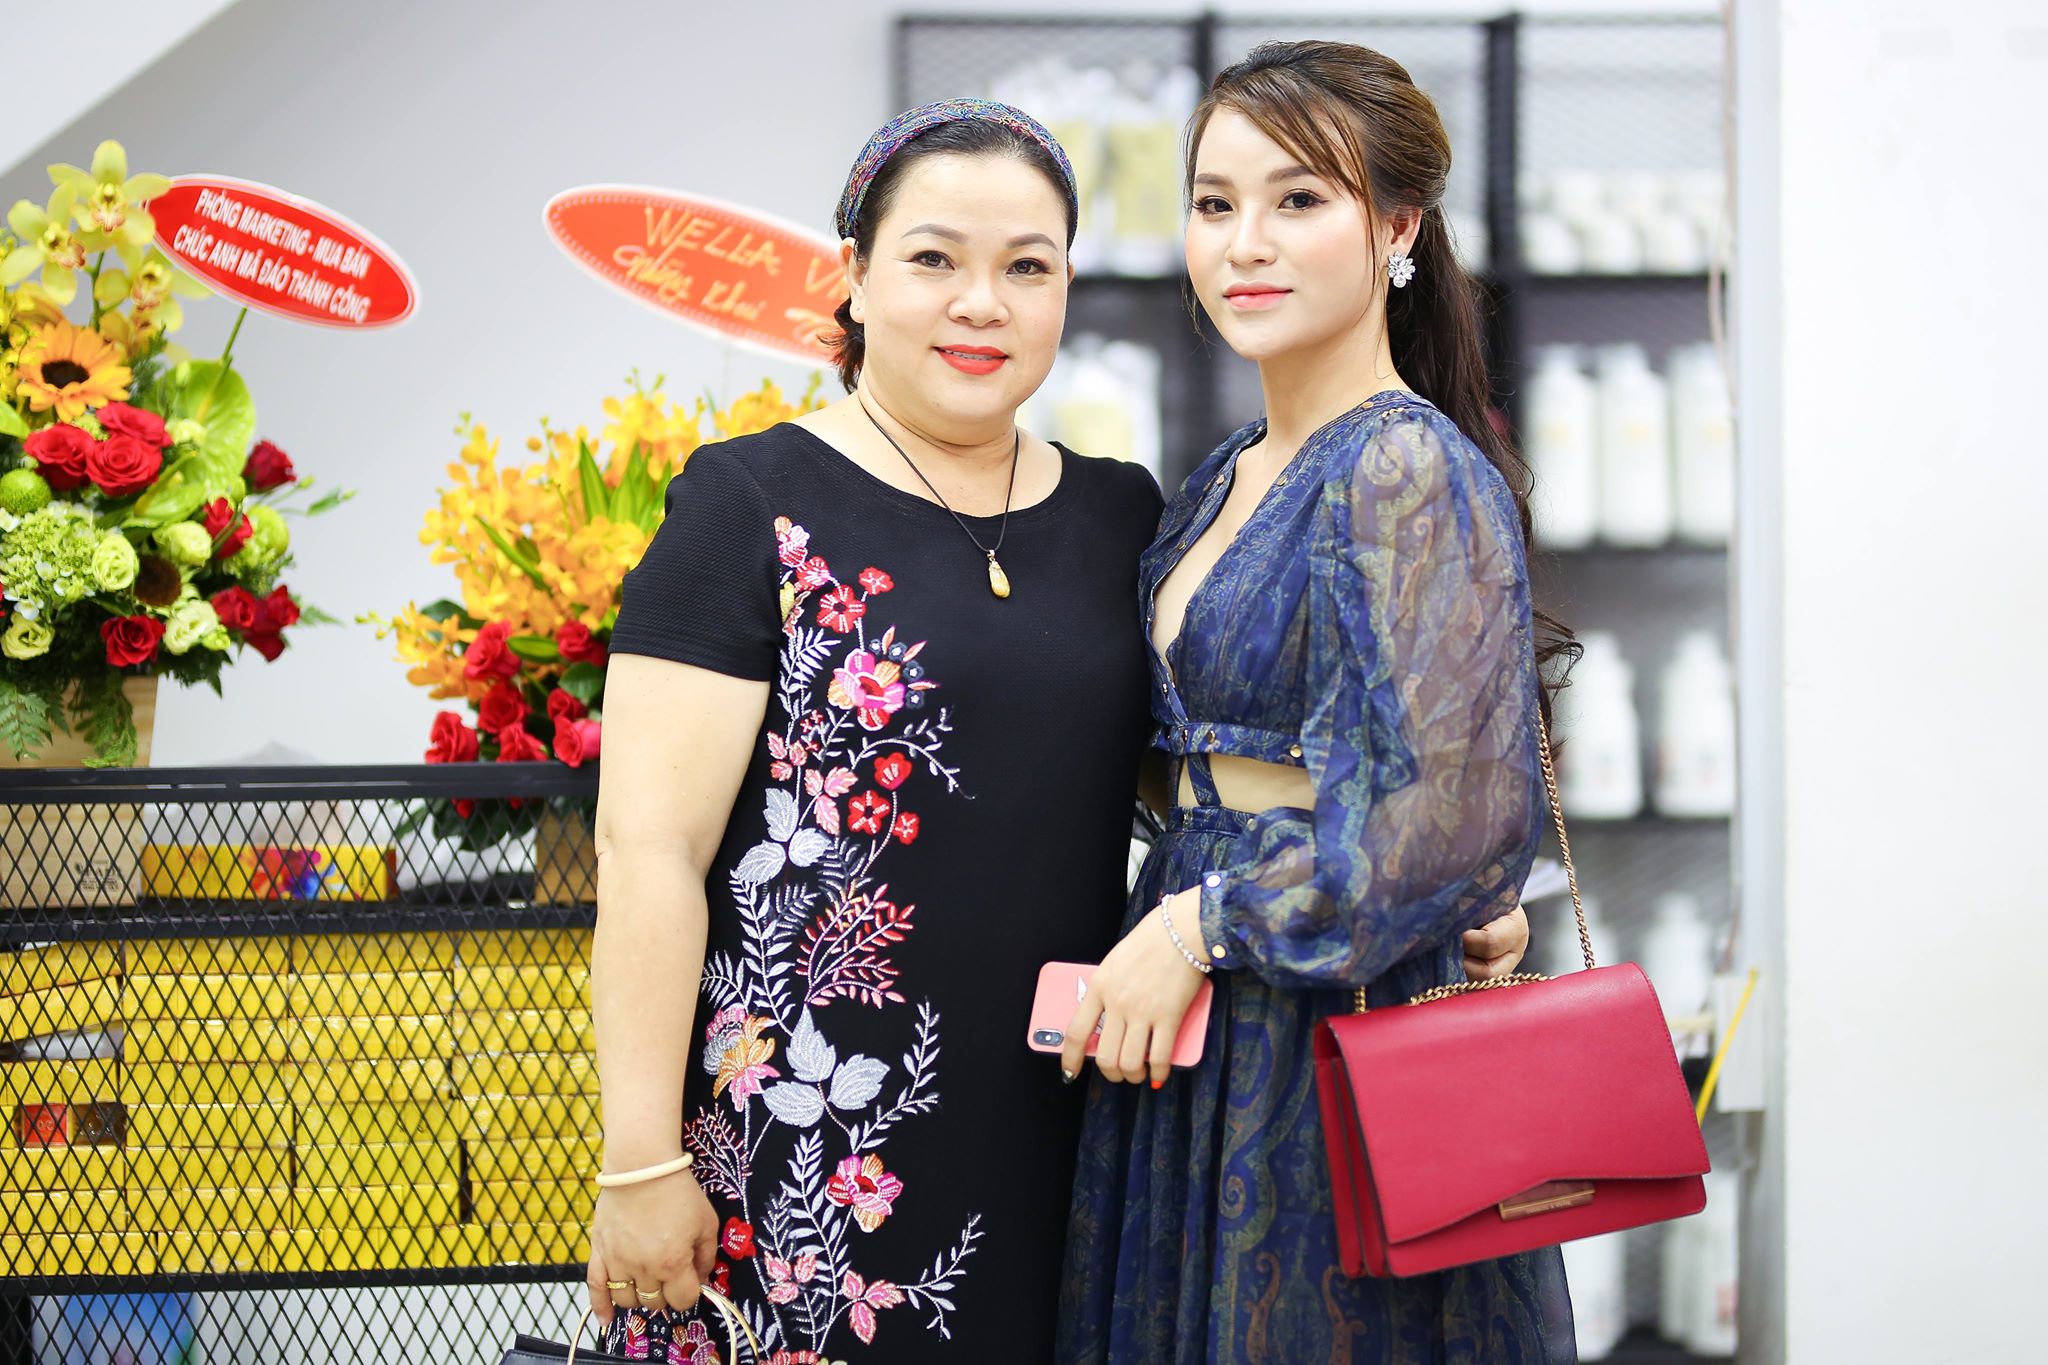 Salon tóc Dũng Sài Gòn – MYhair được biết đến là salon tóc lớn nhất quận 7